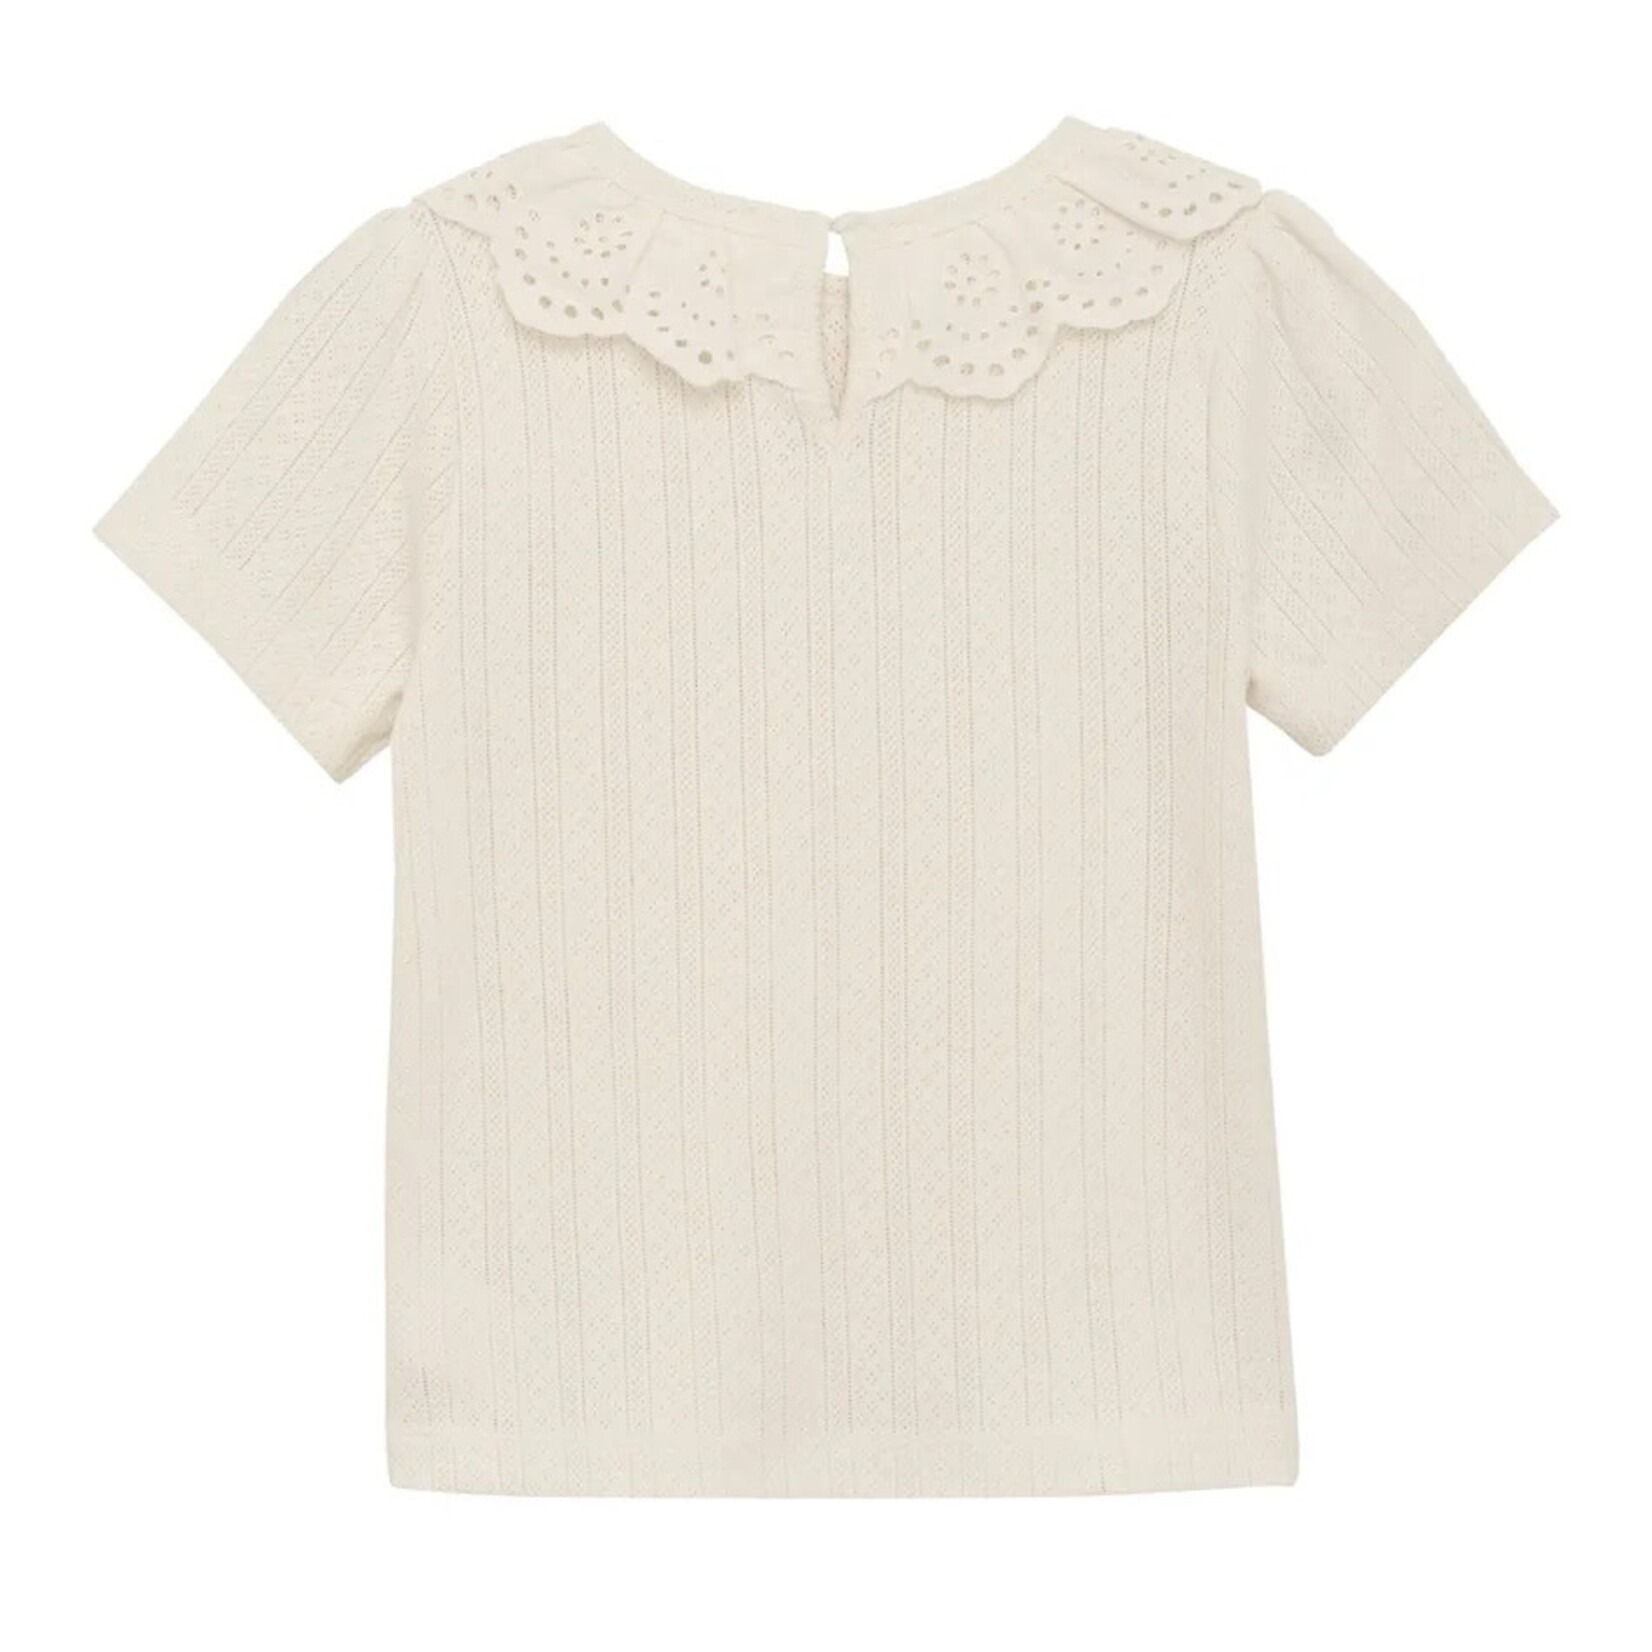 Enfant ENFANT - Cream White Short Sleeve Pointelle T-Shirt